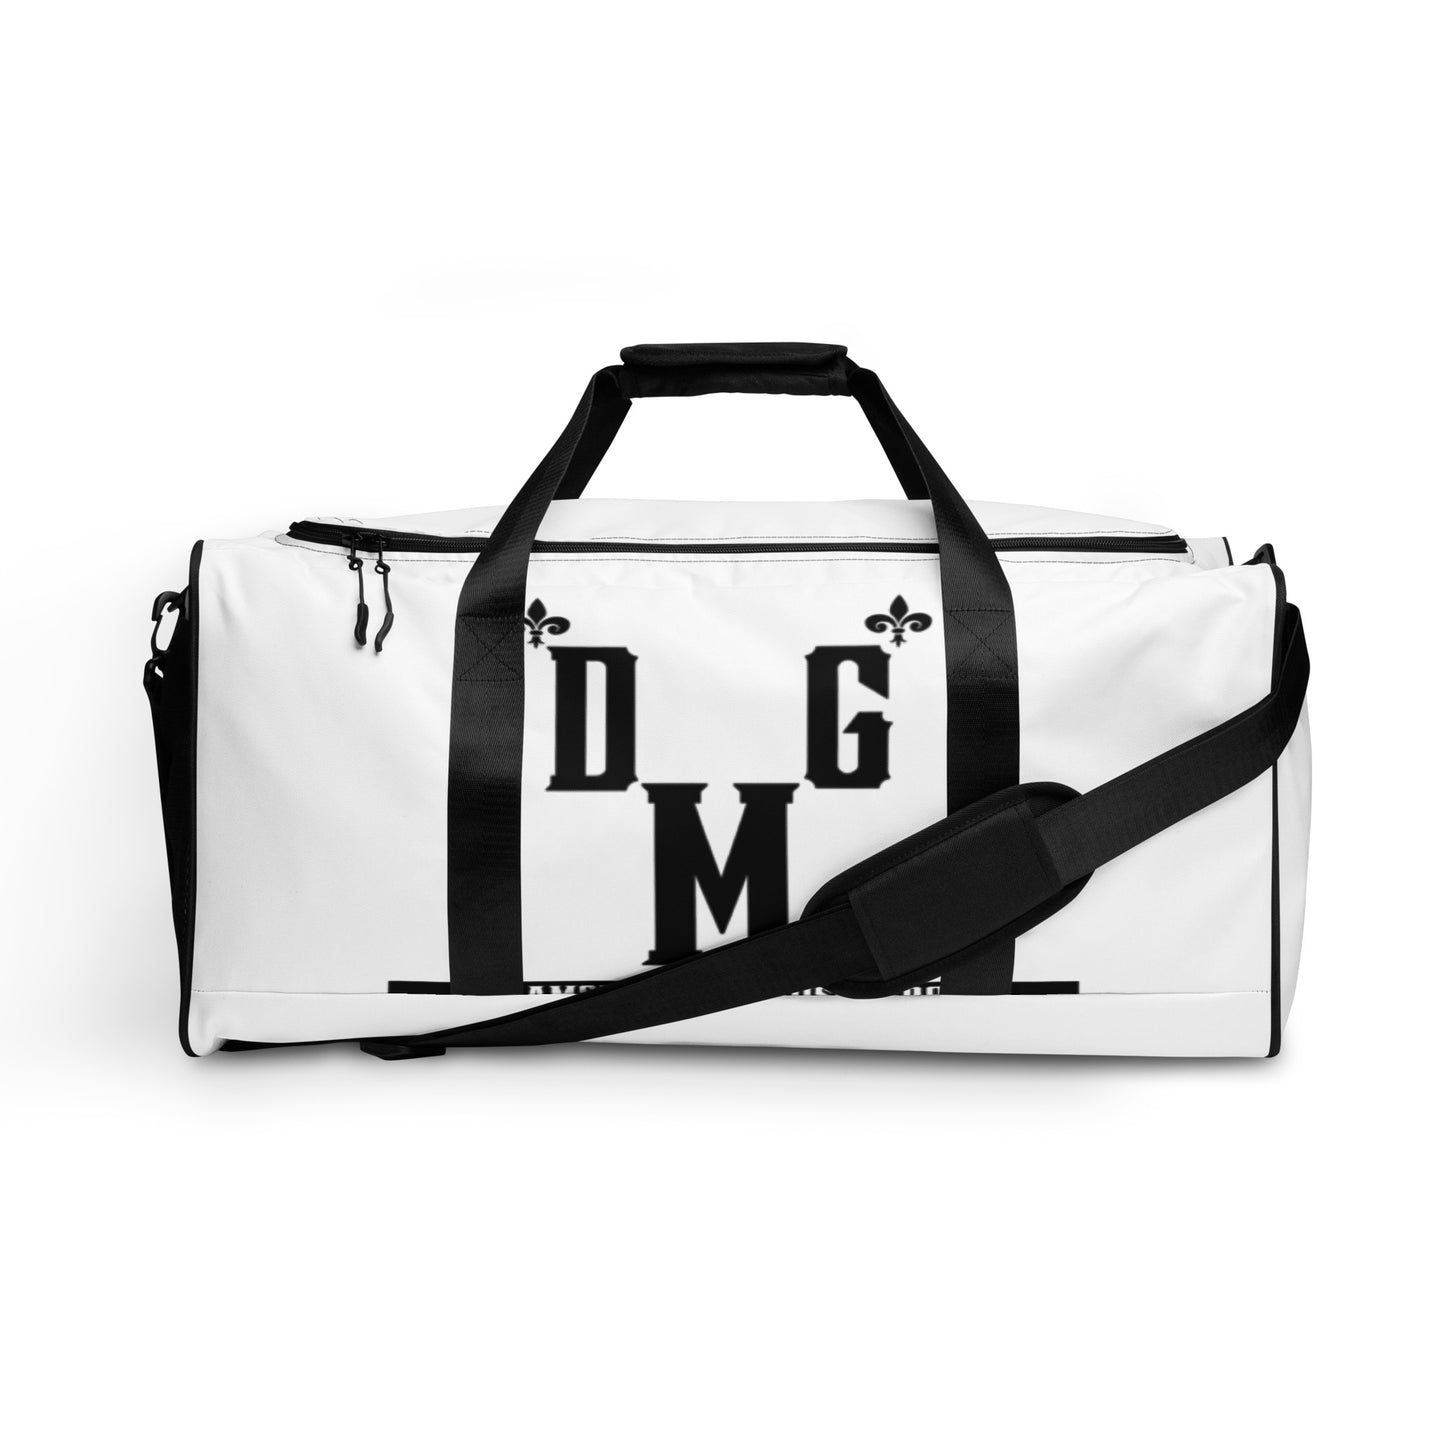 DMG Duffle Bag